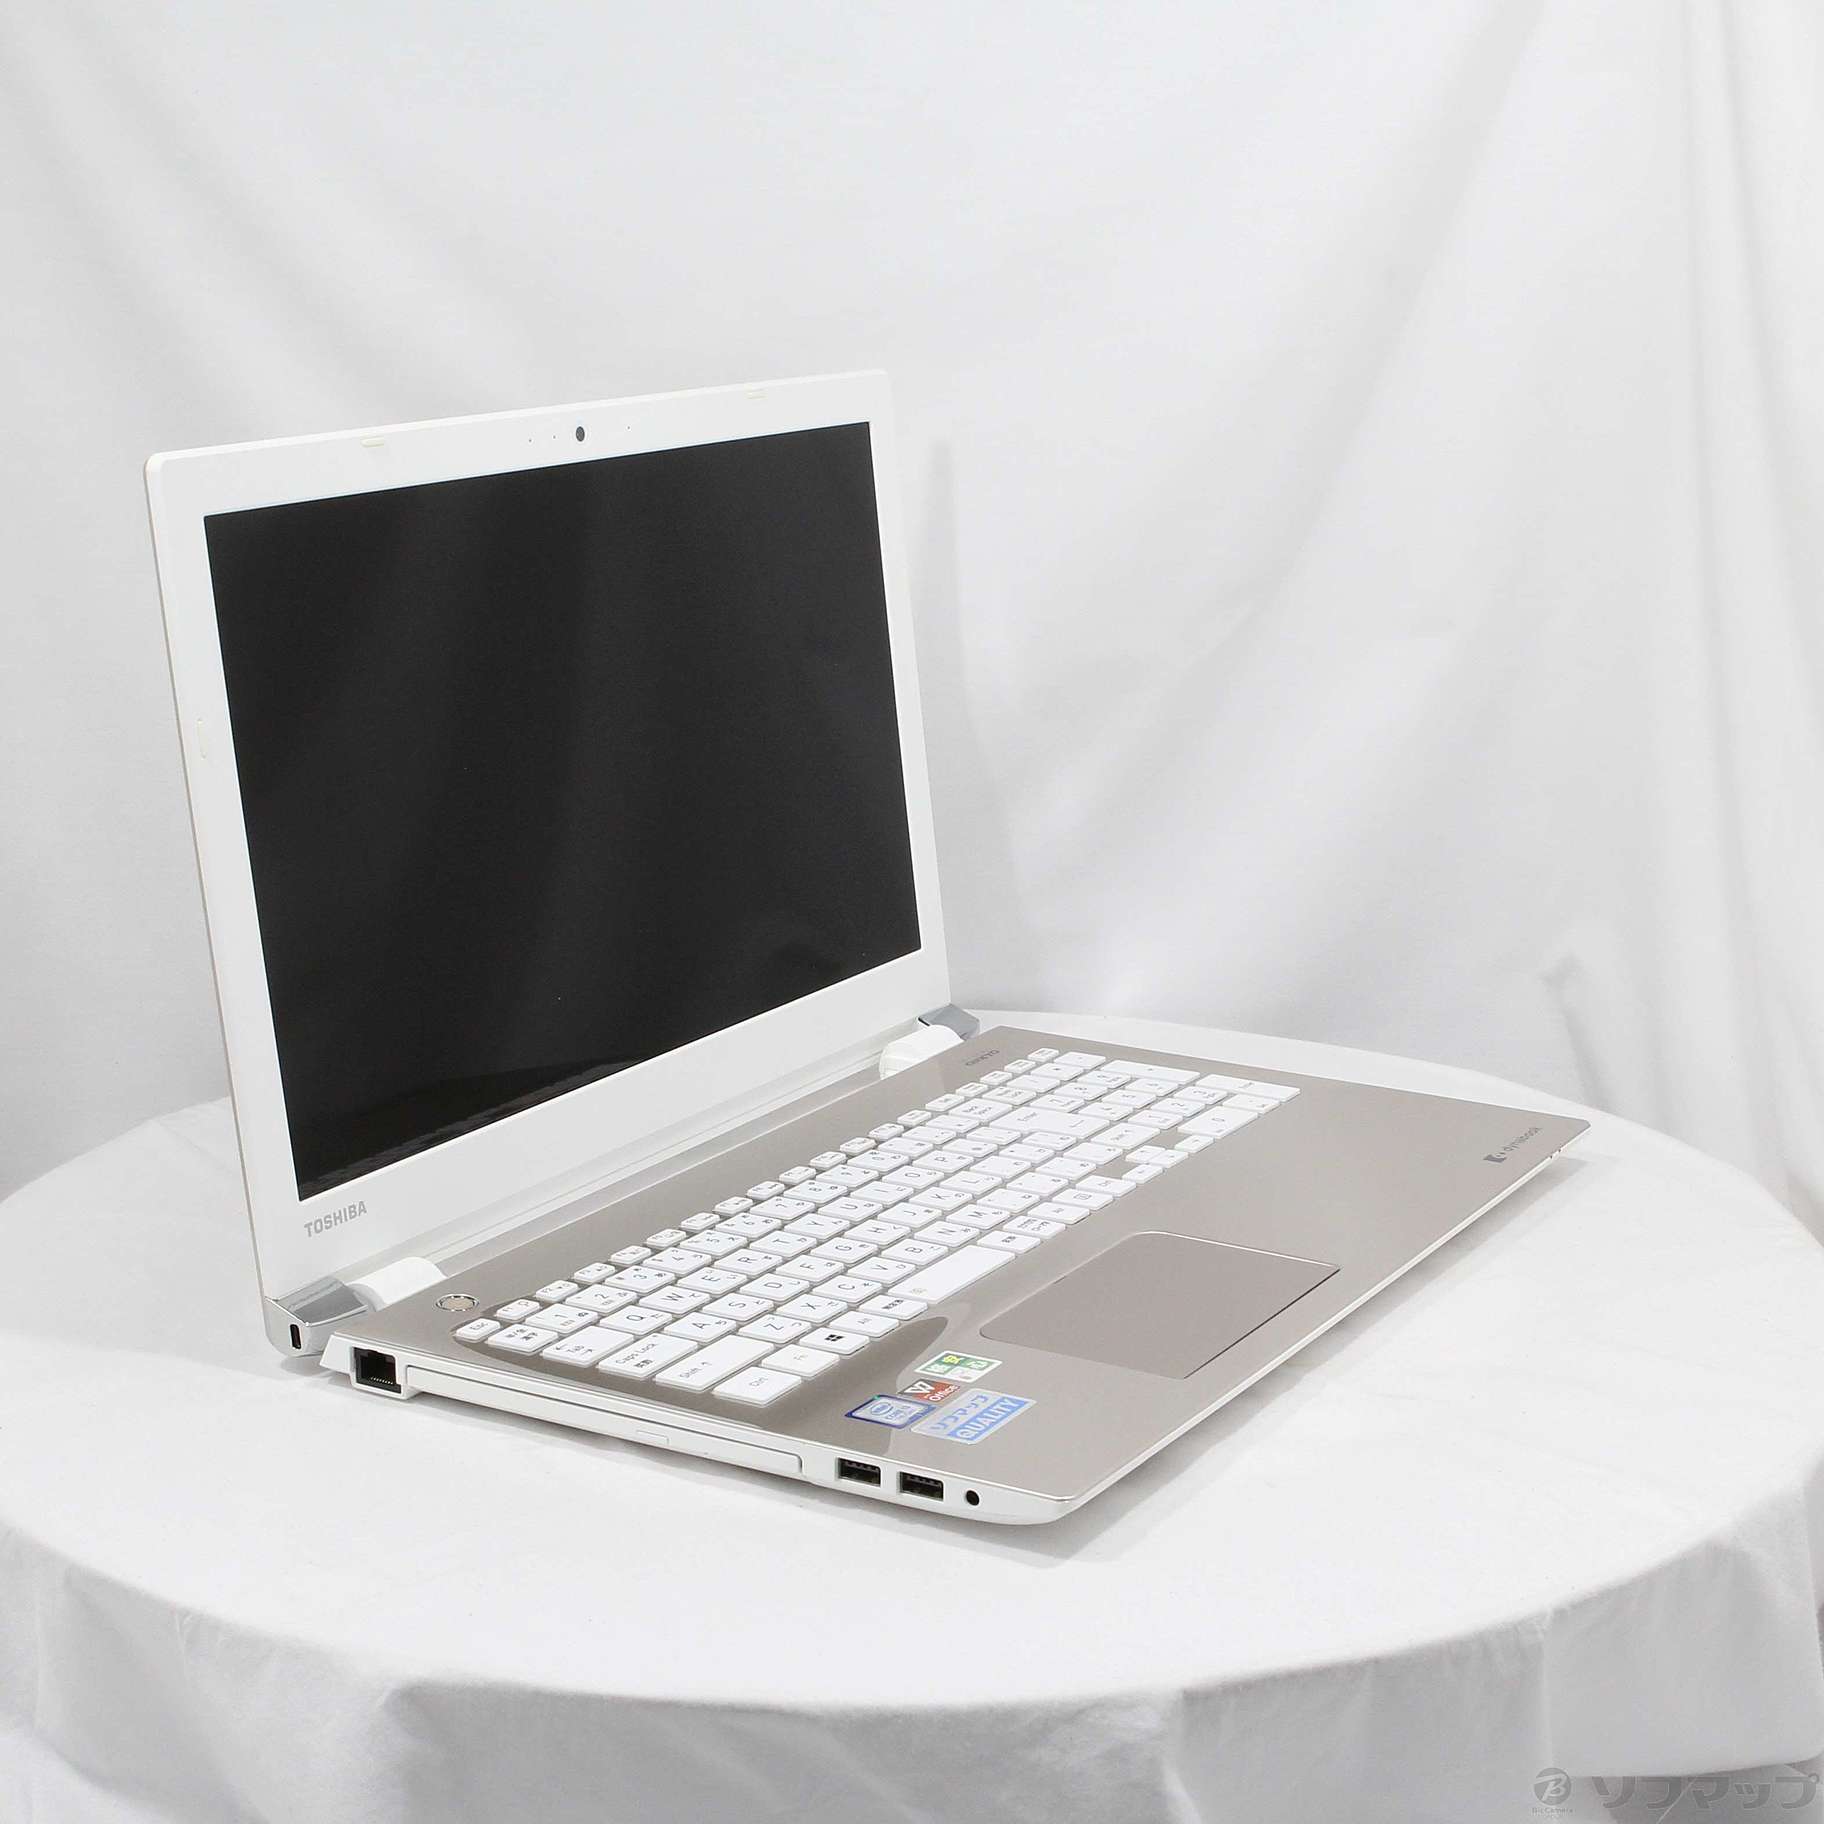 中古品非常便宜的放心的个人电脑dynabook TX/5GG PTX5GGP-REA段子黄金